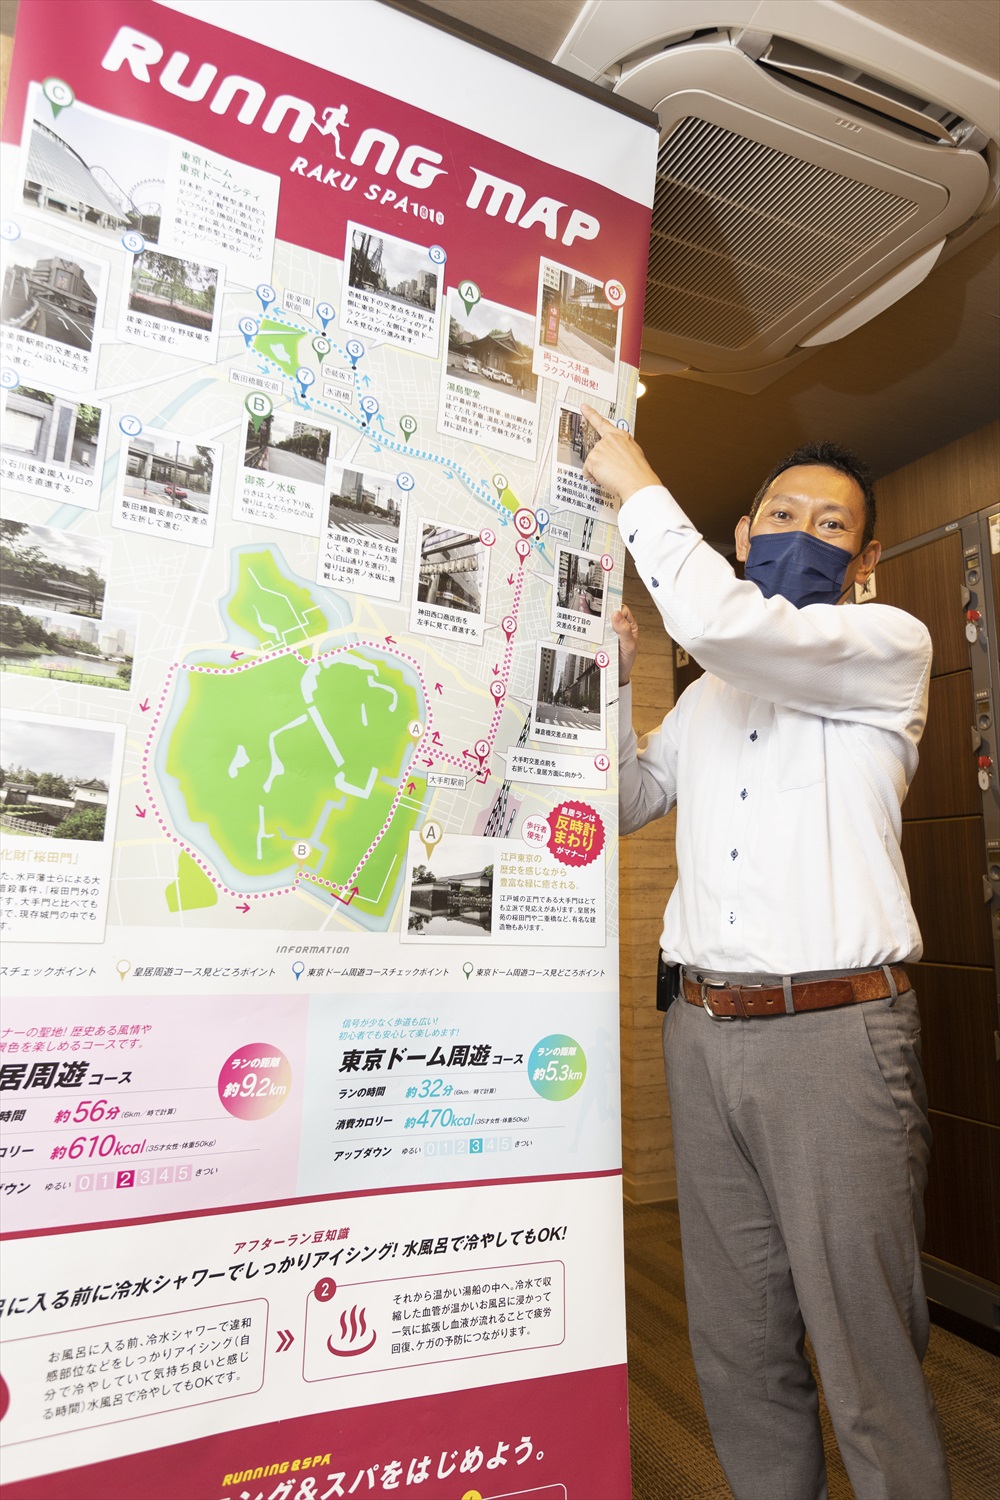 ロッカーの脇には店長・網代浩一さんが自ら走って作った「皇居ランマップ」がある。